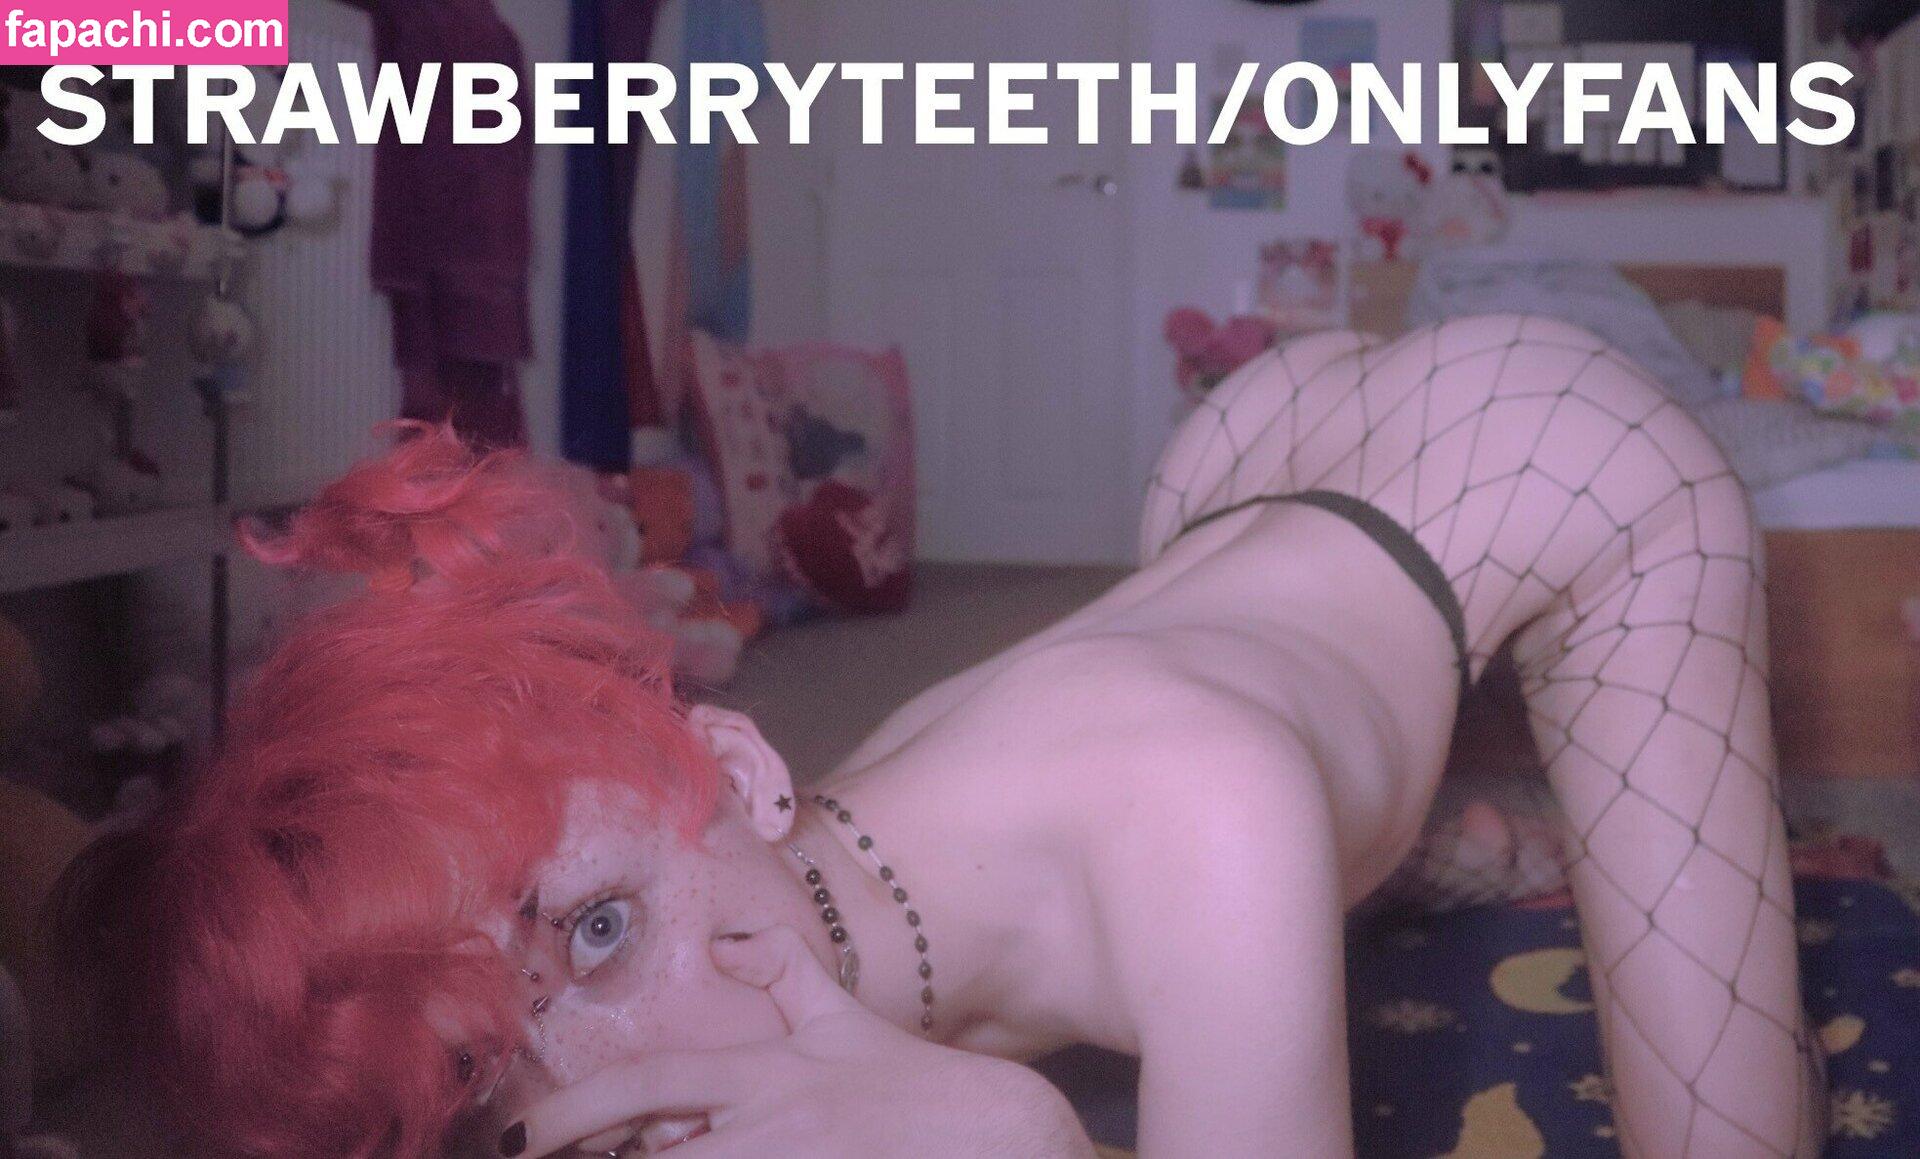 strawberryteeth / _strawberryteeth leaked nude photo #0188 from OnlyFans/Patreon